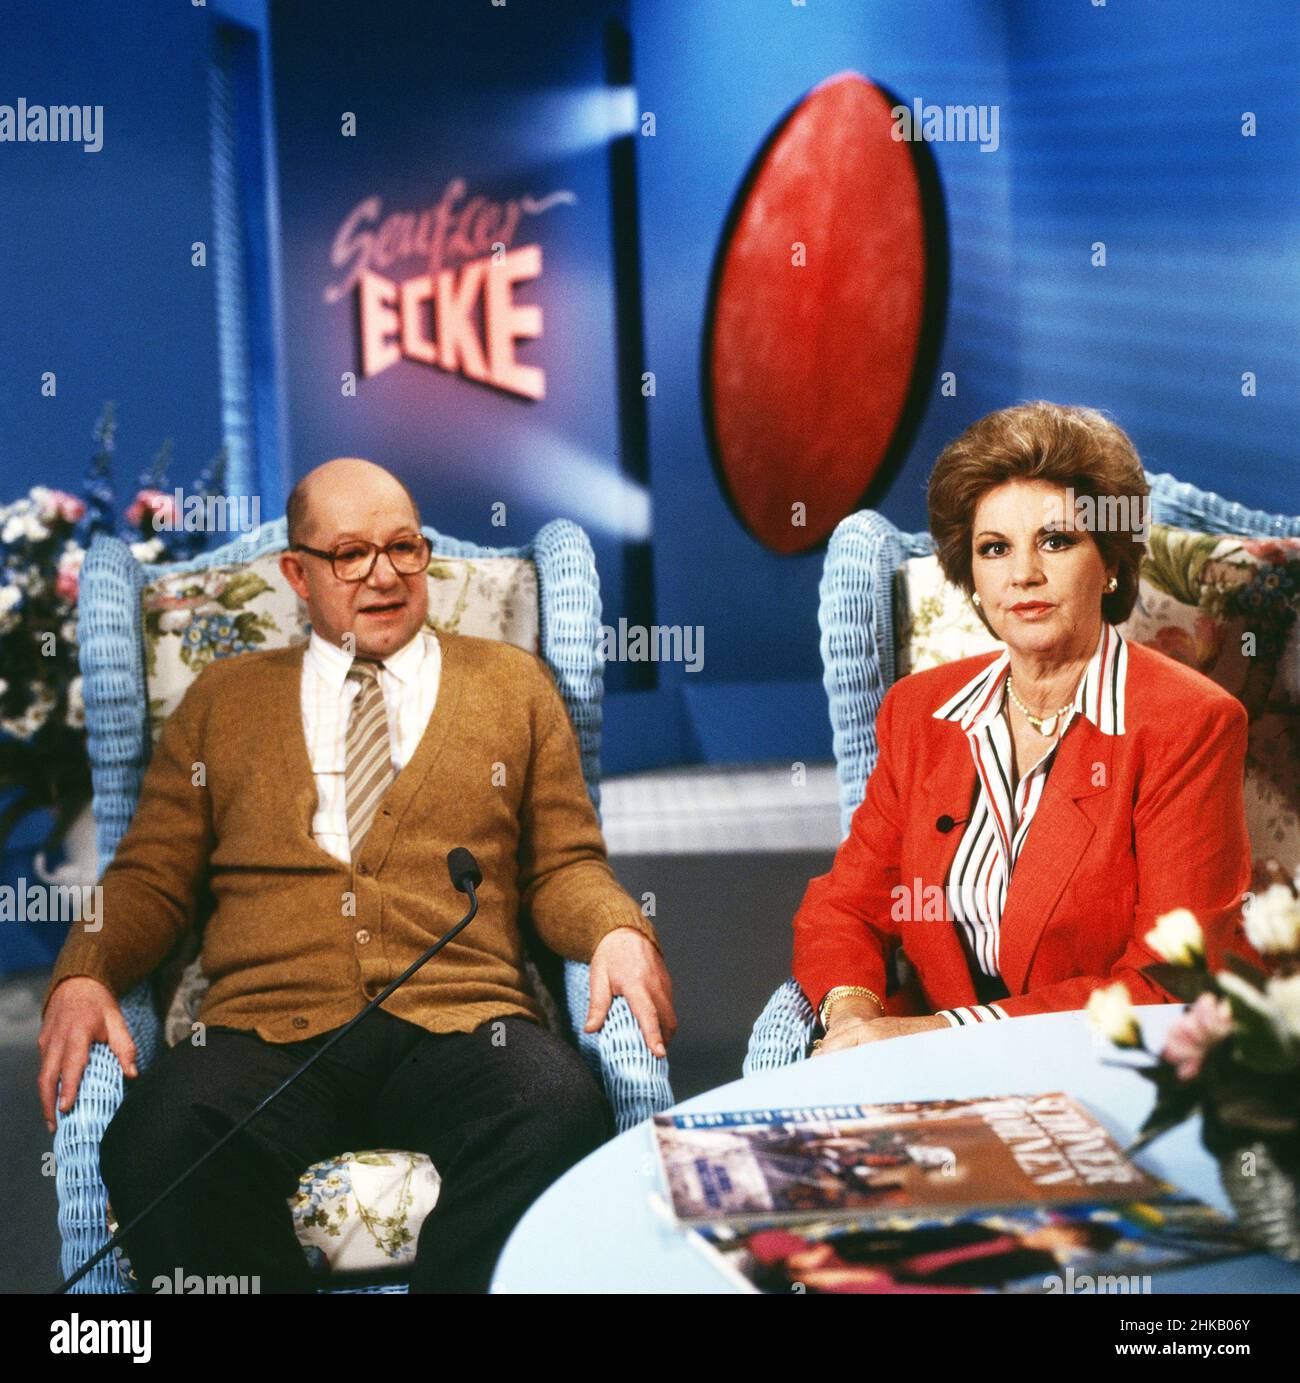 Fragen Sie Frau Doktor Cora, Comedy-Sendereihe, Deutschland 1989, Darsteller: Jürgen Holtz, Johanna von Koczian Stock Photo